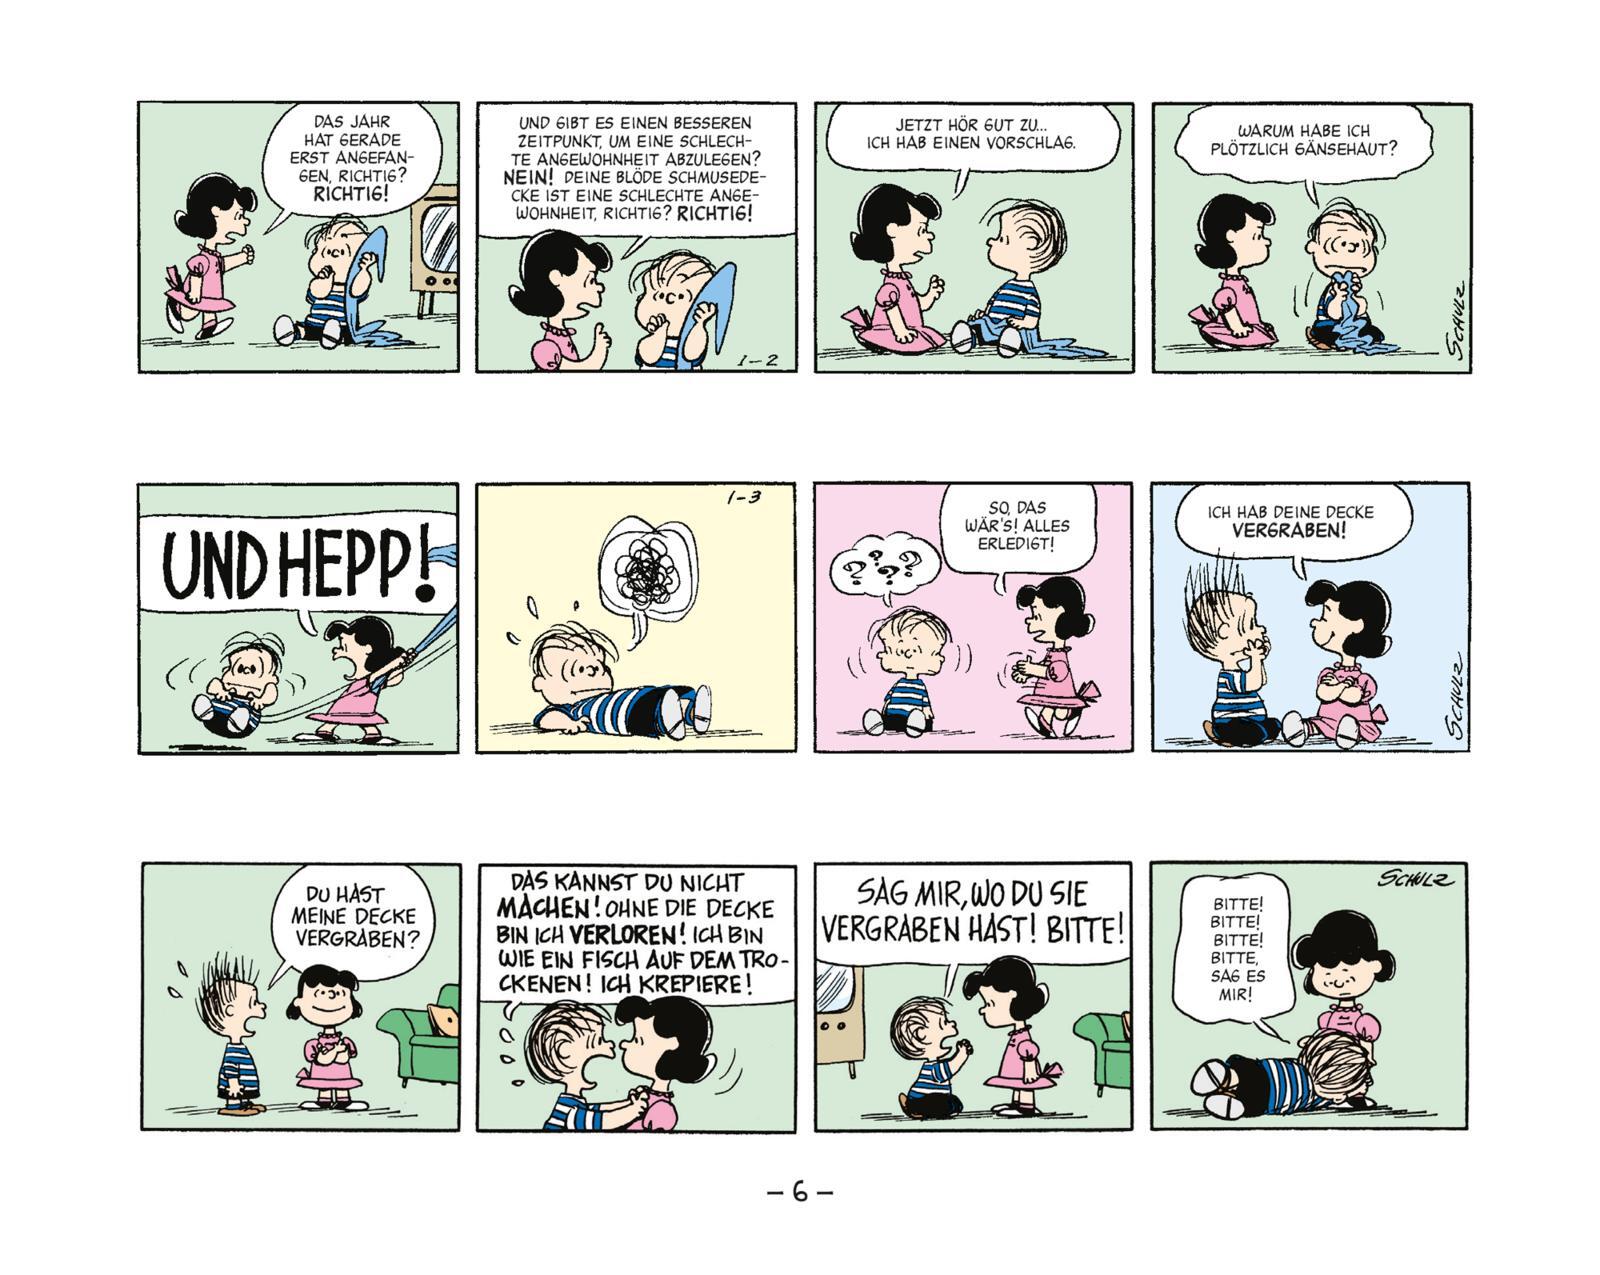 Peanuts Geschenkbuch: Happy Birthday zum 60. Geburtstag Buch